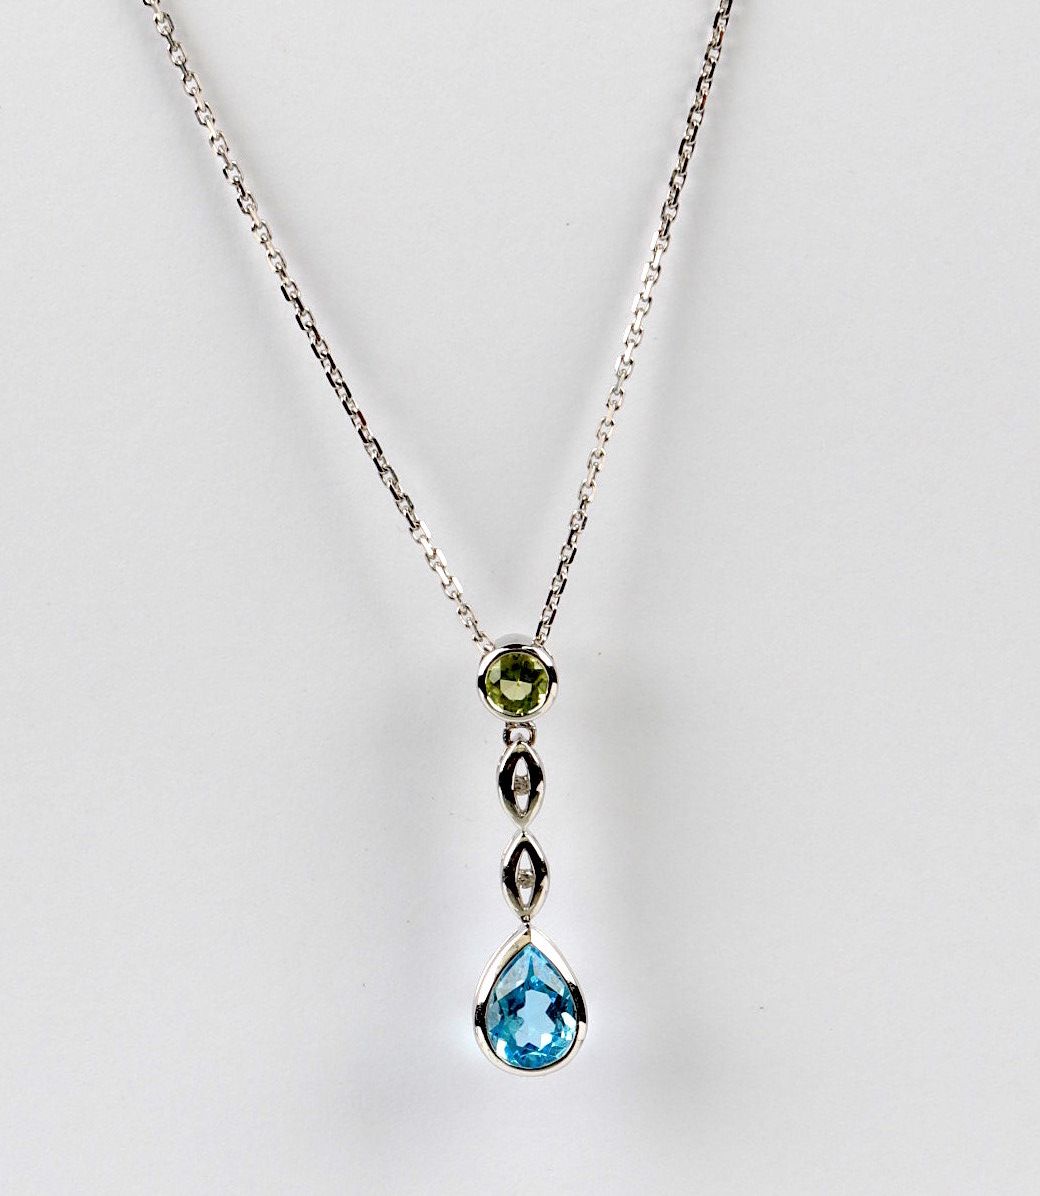 Null 750/1000（18克拉）钻石切割白金吊坠+项链，带有 "鹰头 "印记4g10，镶有一颗梨形切割的蓝色托帕石和一颗圆形切割的橄榄石，共重1.75克拉&hellip;